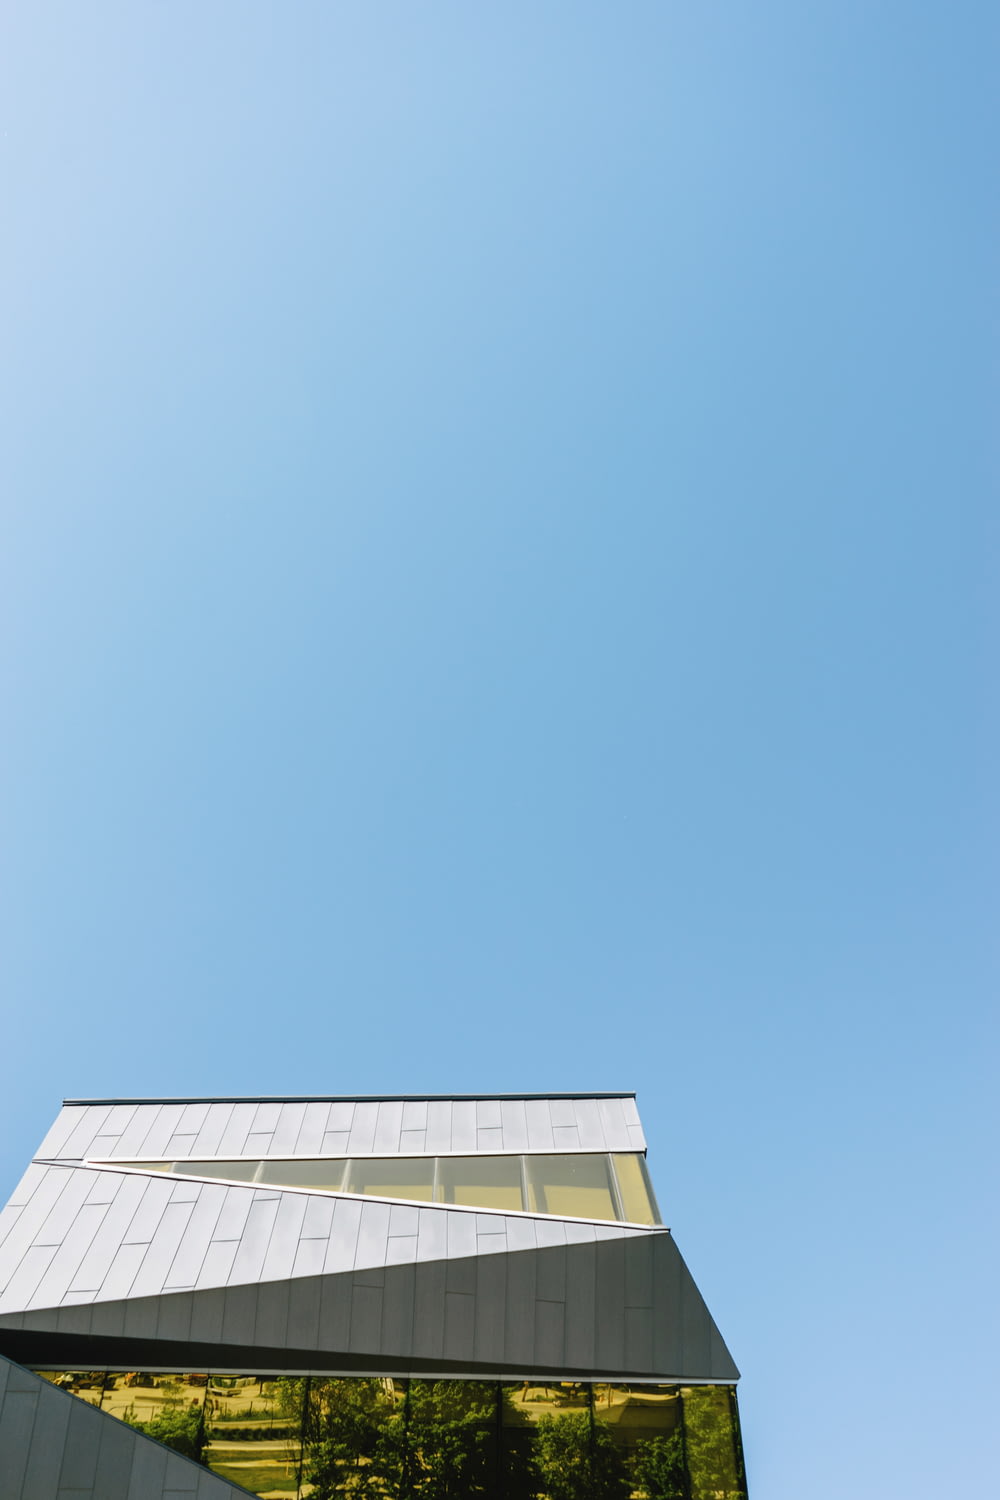 fotografia ad angolo basso di un edificio in cemento bianco sotto il cielo azzurro